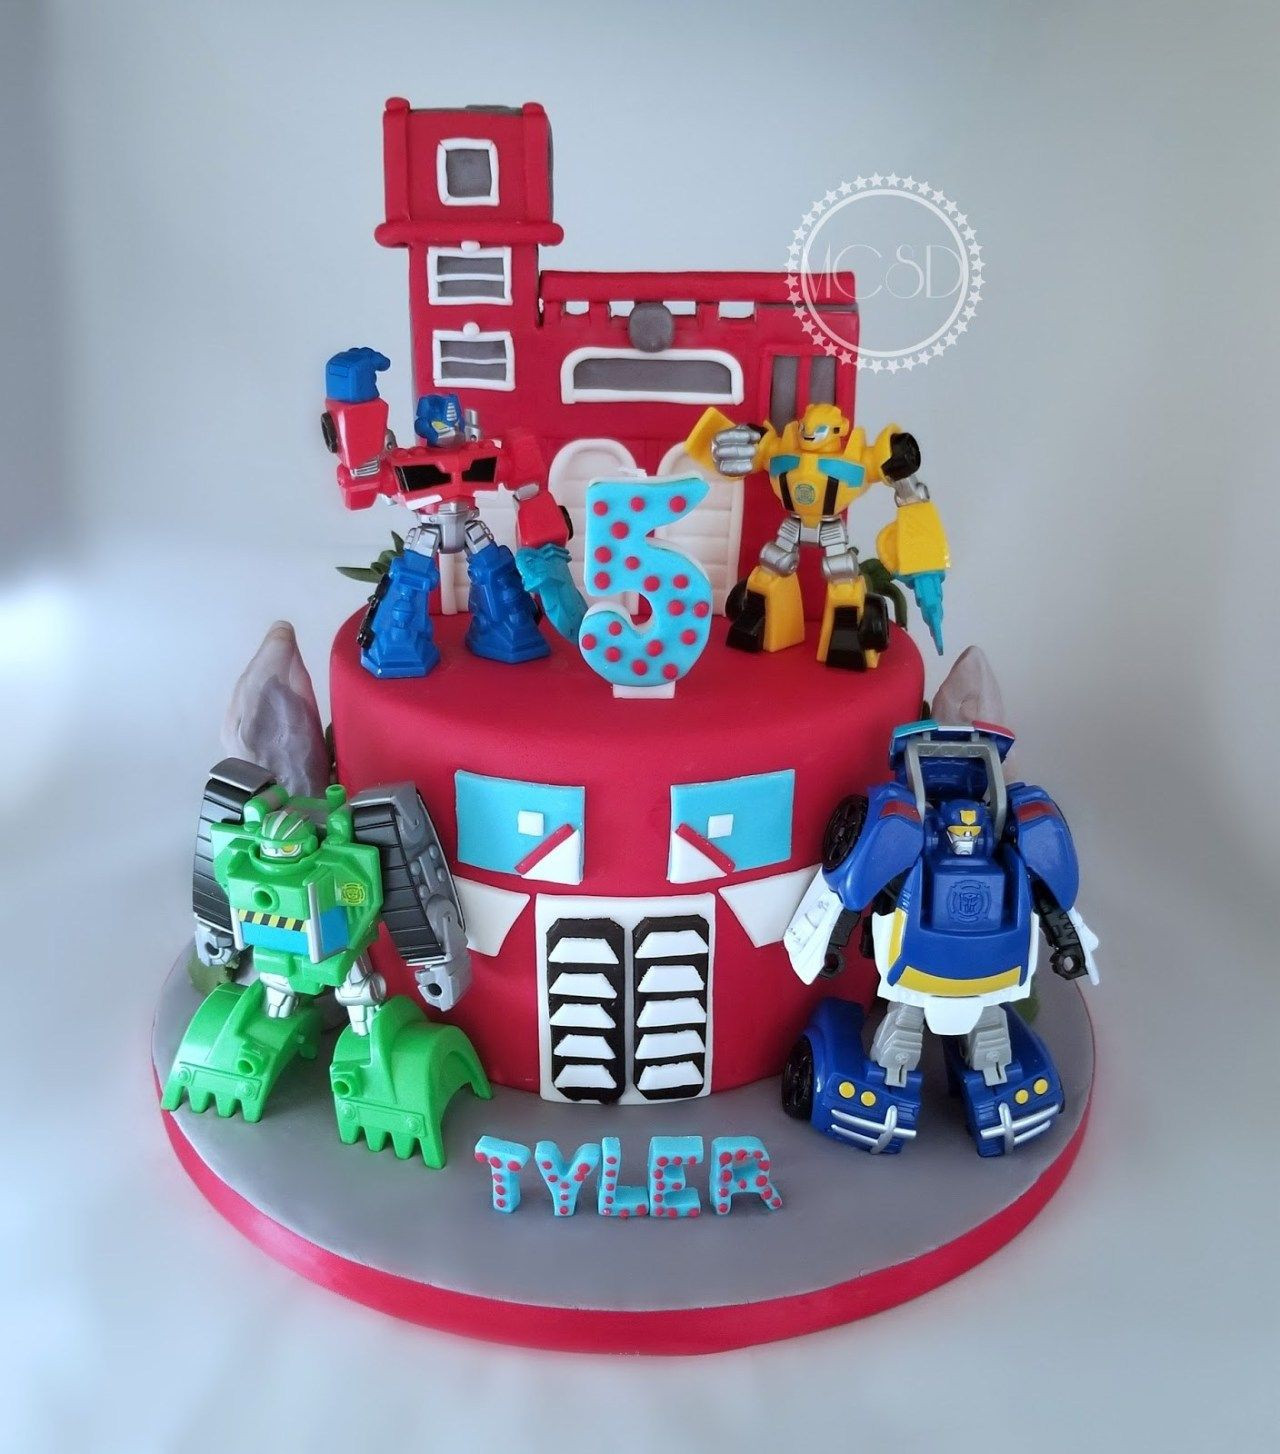 Rescue Bots Birthday Cake
 Rescue Bots Birthday Cake My Cake Sweet Dreams Rescue Bots